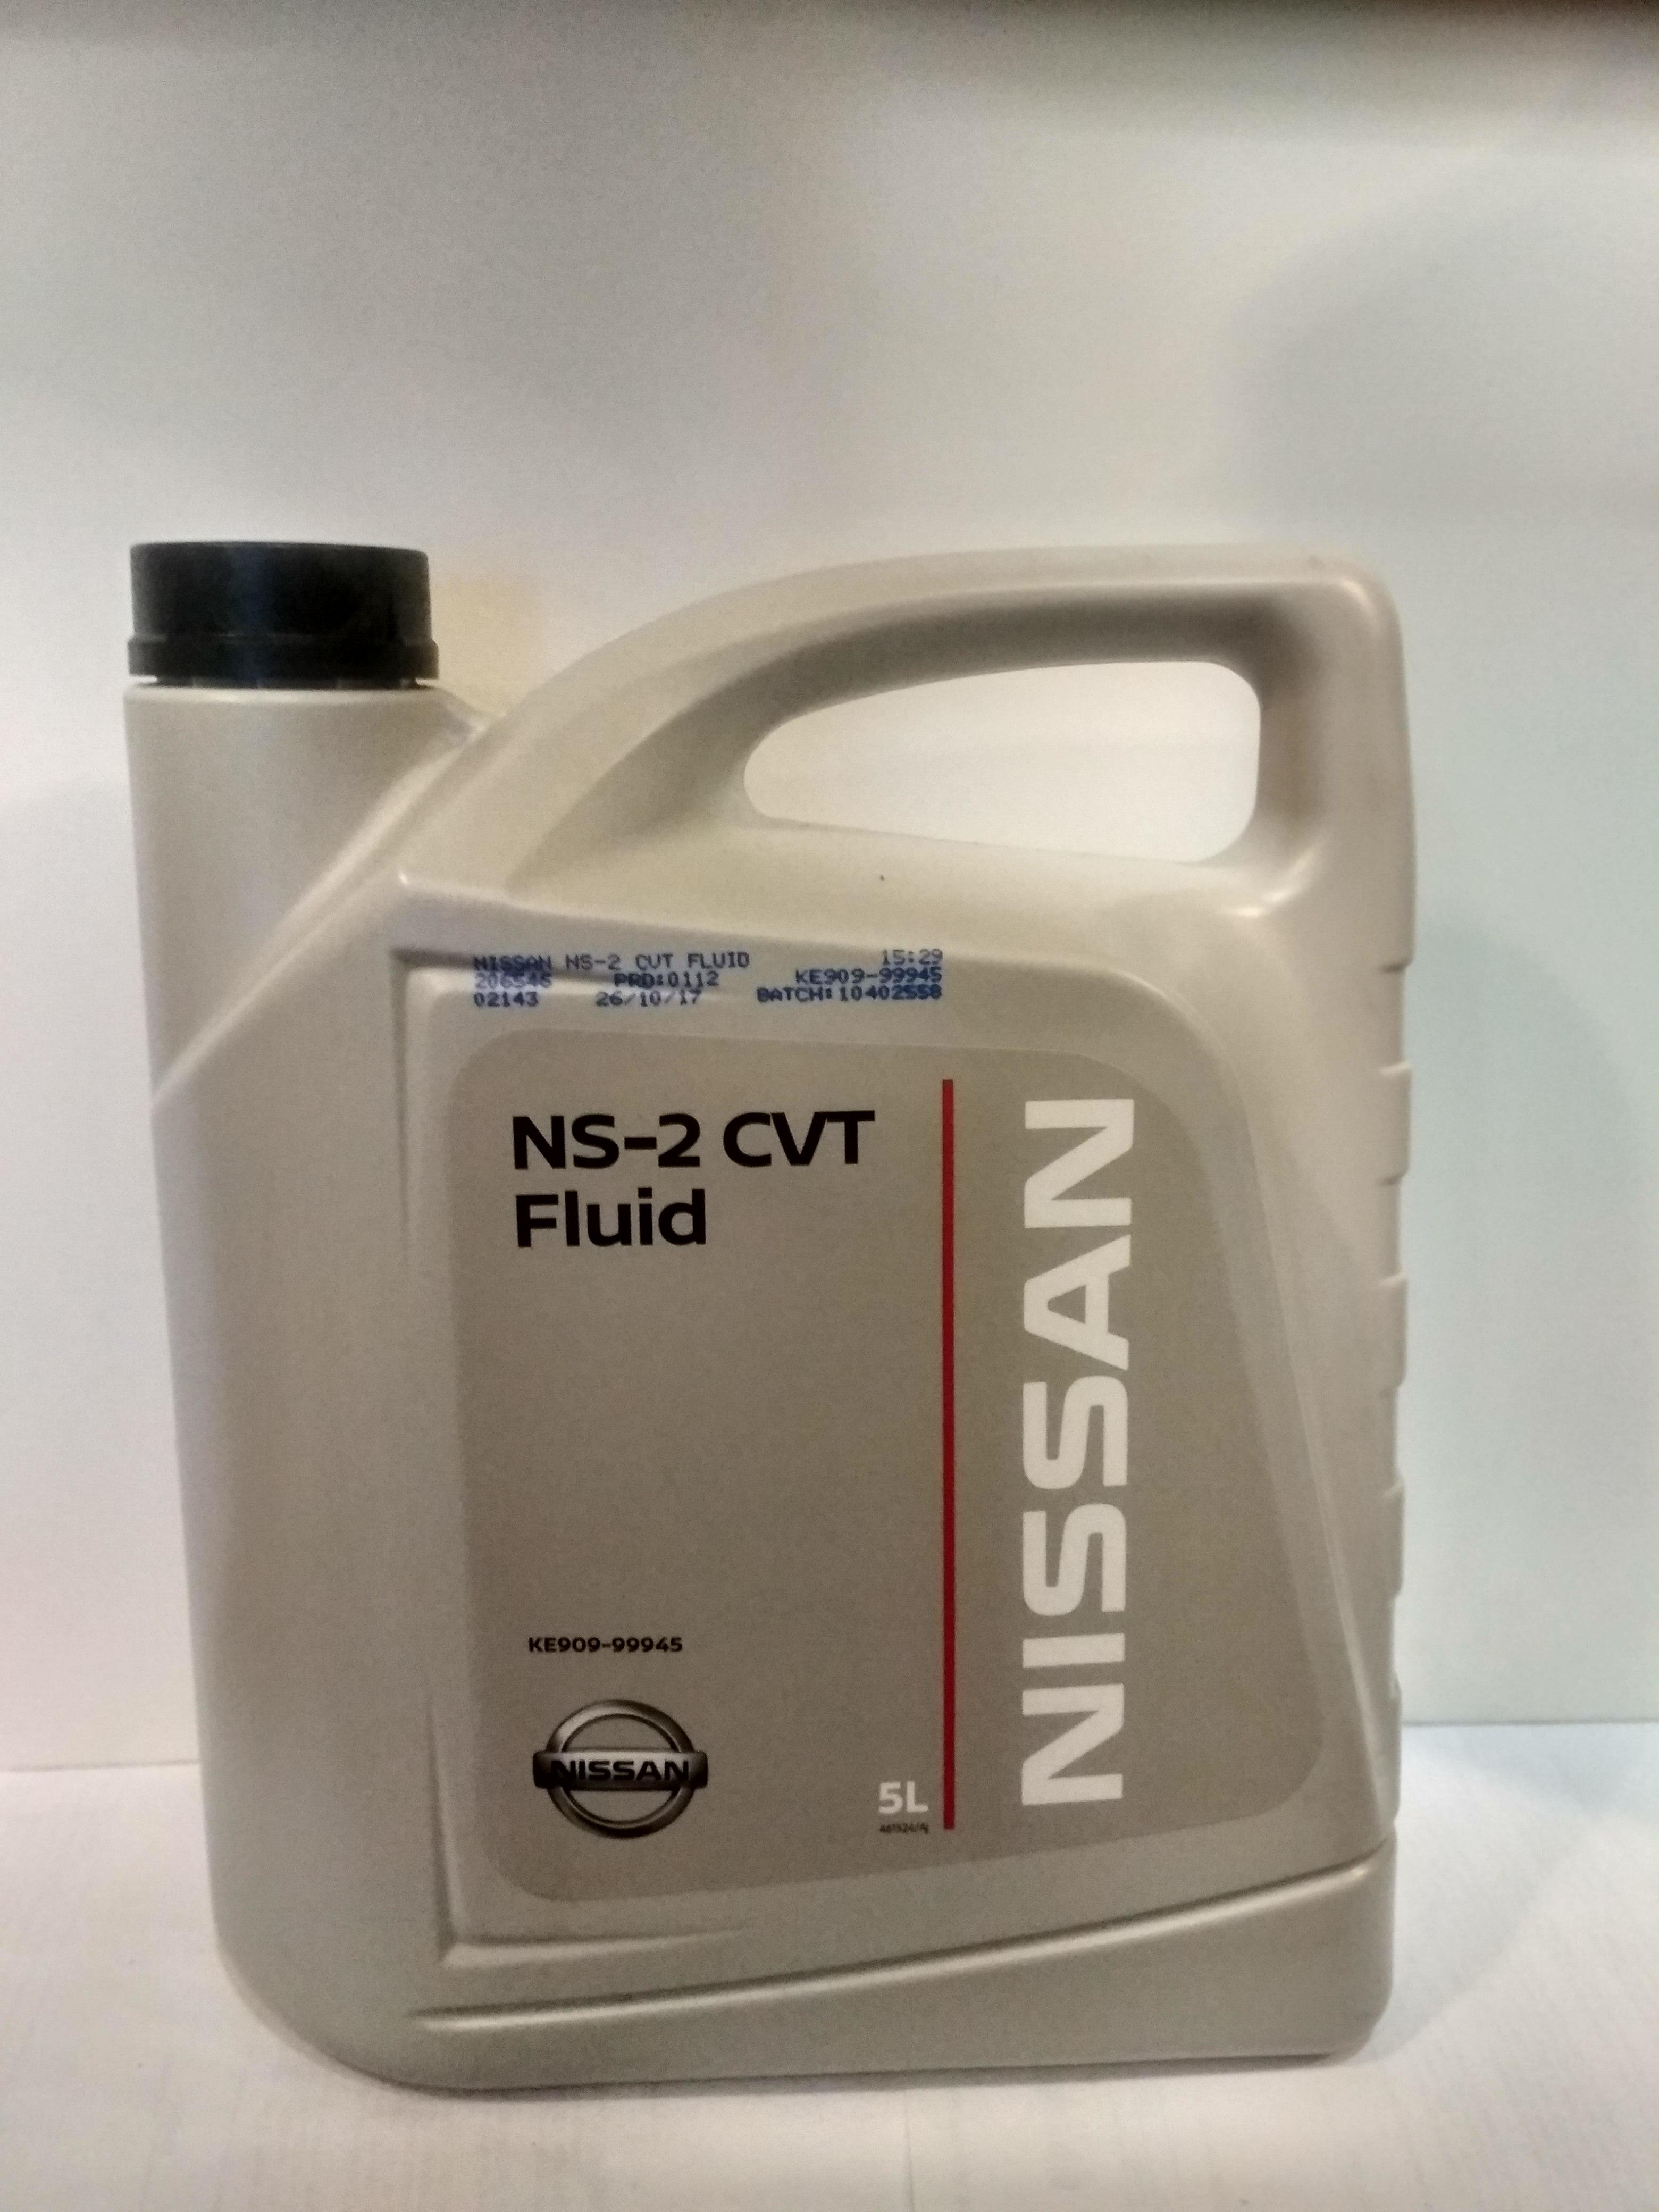 Трансмиссионное масло Ниссан ke909-99943. Масло x Trail Nissan NS-2. Nissan CVT NS-2.